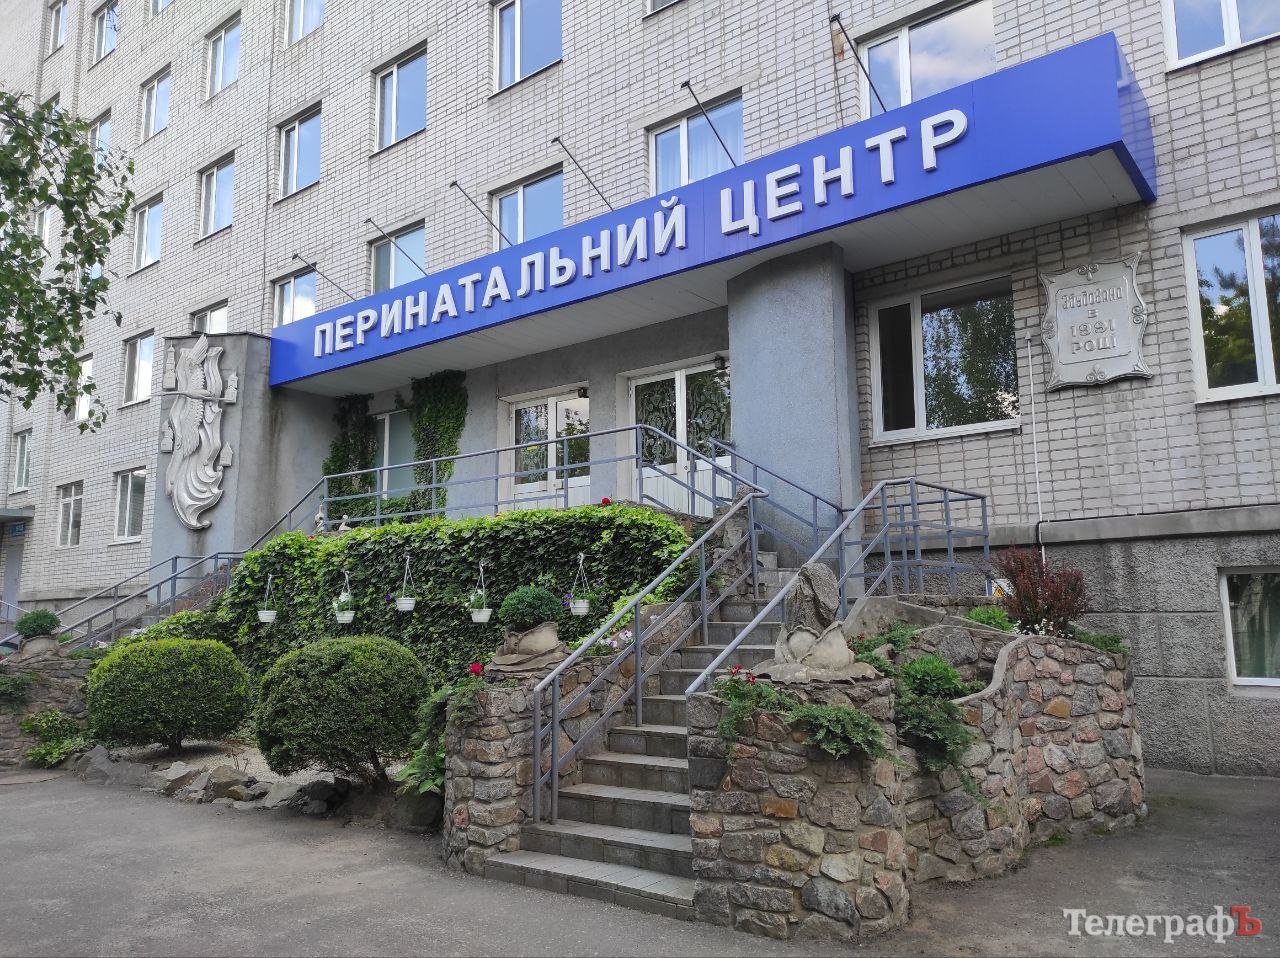 Для Кременчуцького перинатального центру планують виділити ще понад 1,5 млн грн